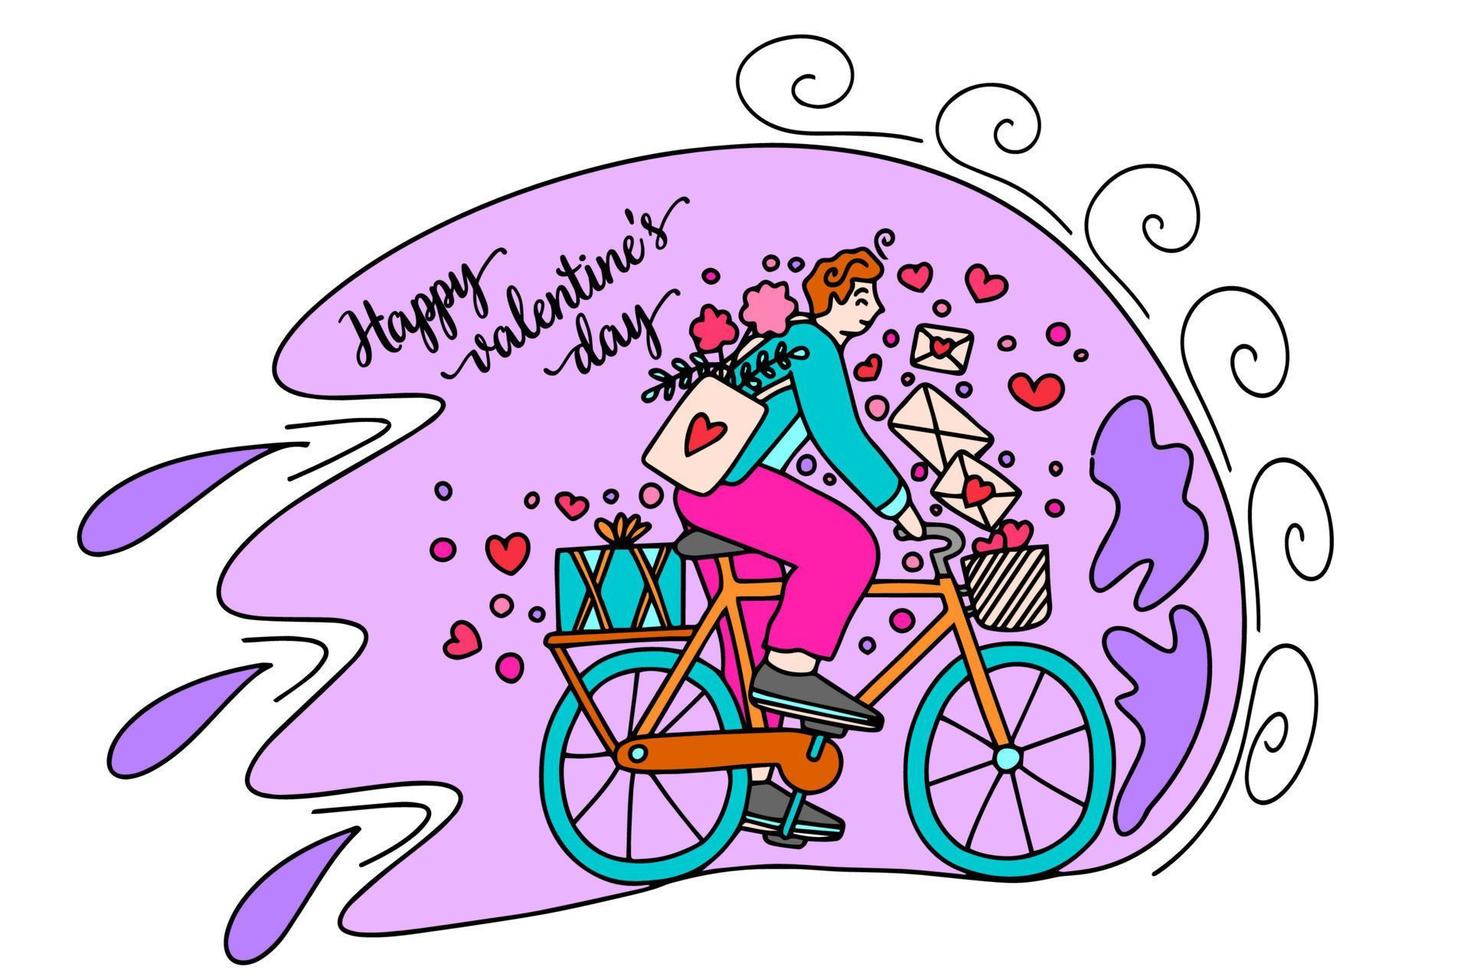 en cyklist levererar kärlek brev och gåvor. Grattis på hjärtans dag och Mars 8:a. detta är en vektor bild i de stil av en komisk bok